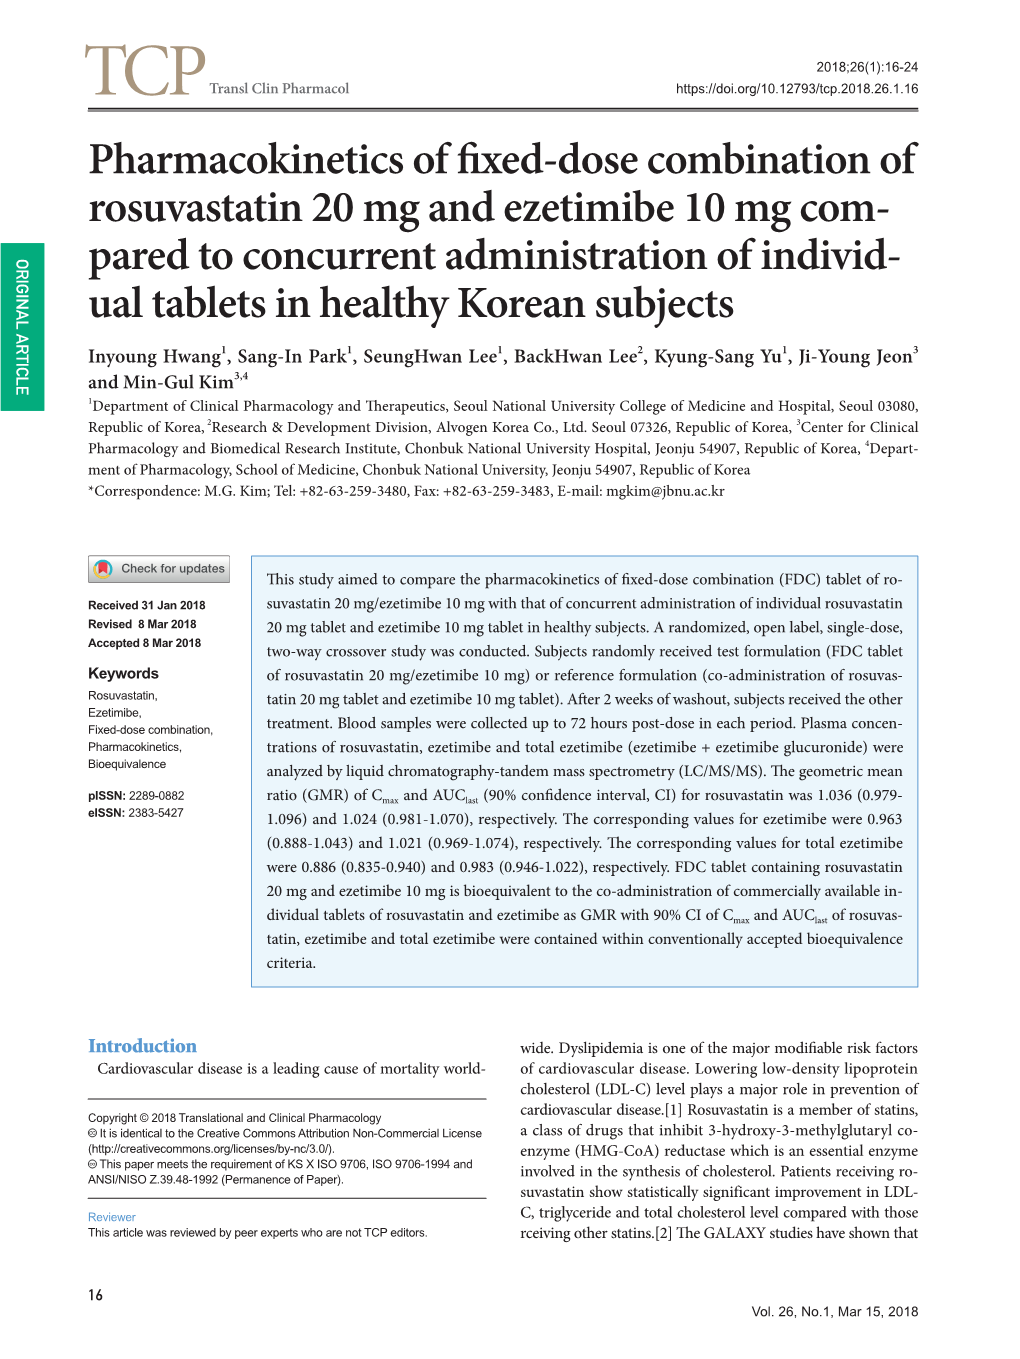 Pharmacokinetics of Fixed-Dose Combination of Rosuvastatin 20 Mg